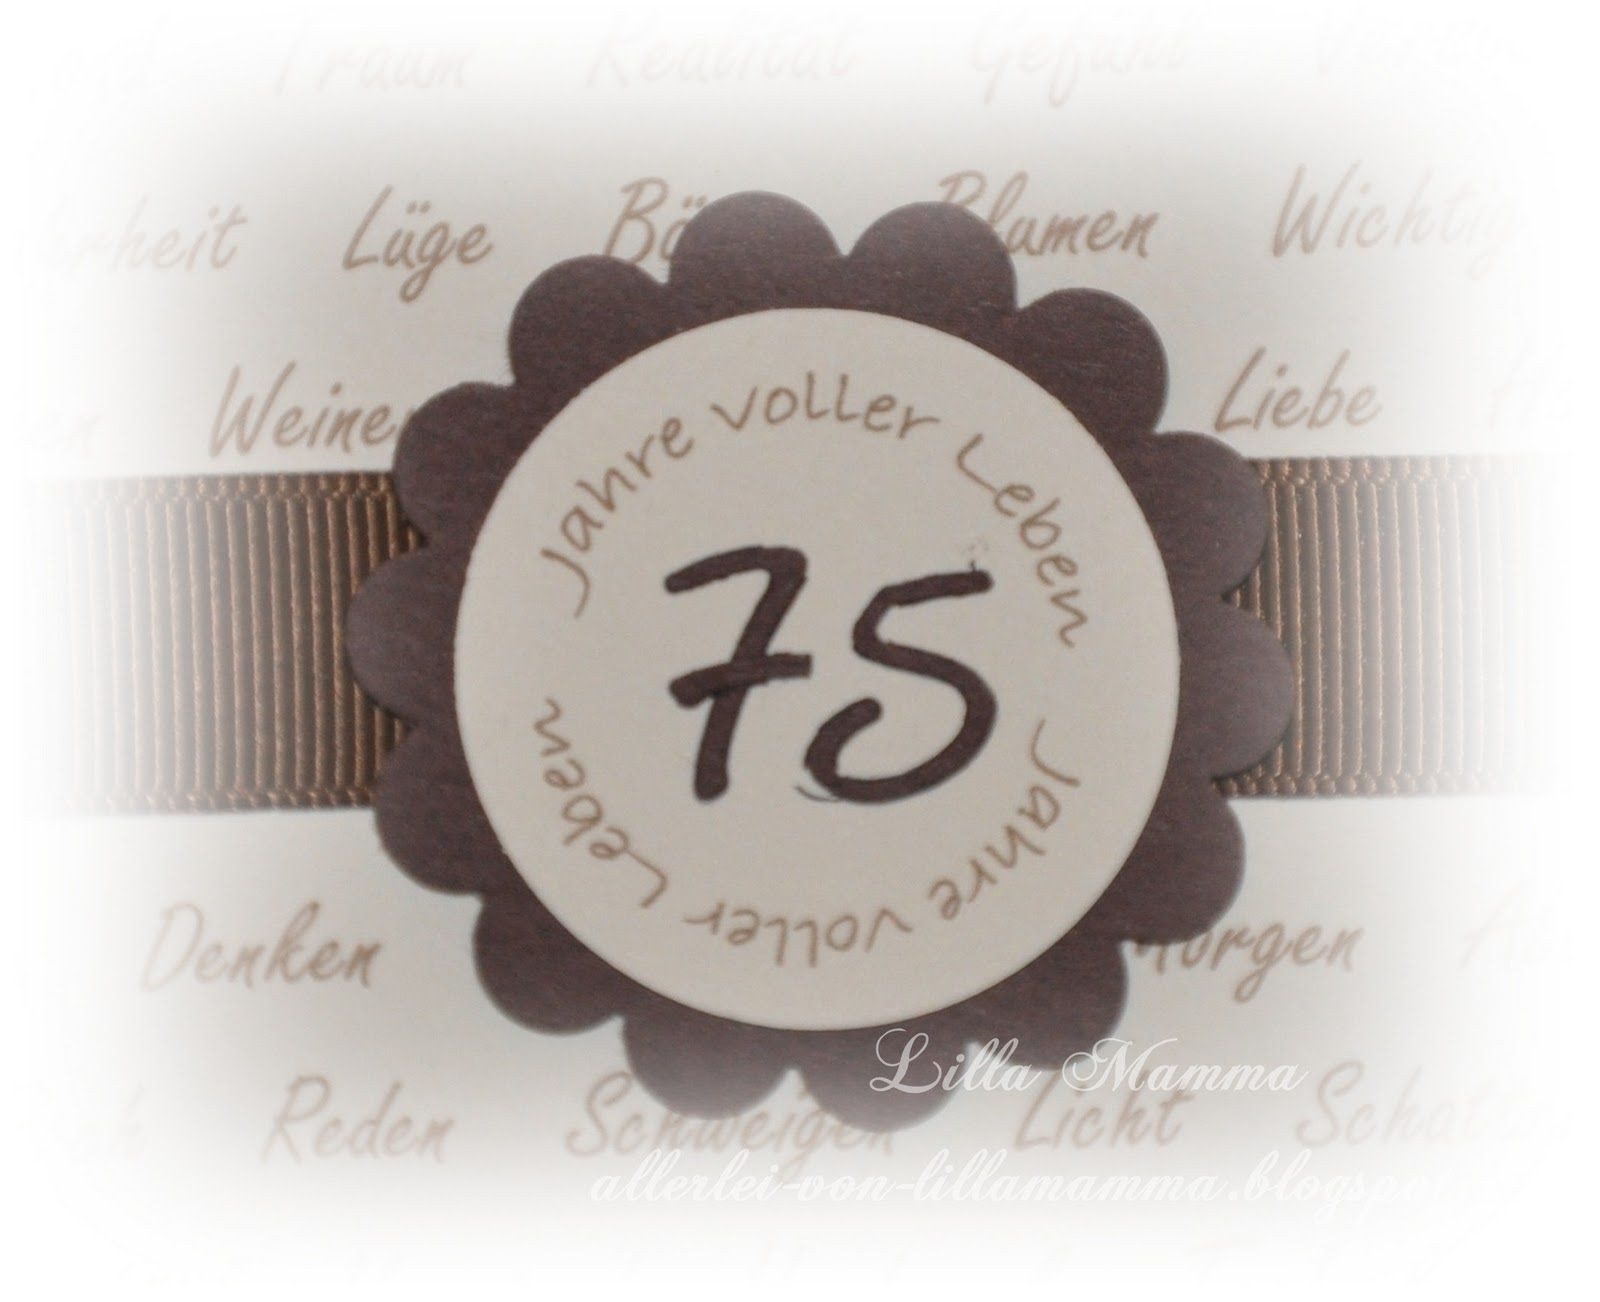 Geburtstagssprüche Zum 75. Geburtstag
 Einladungskarten Zum 75 Geburtstag